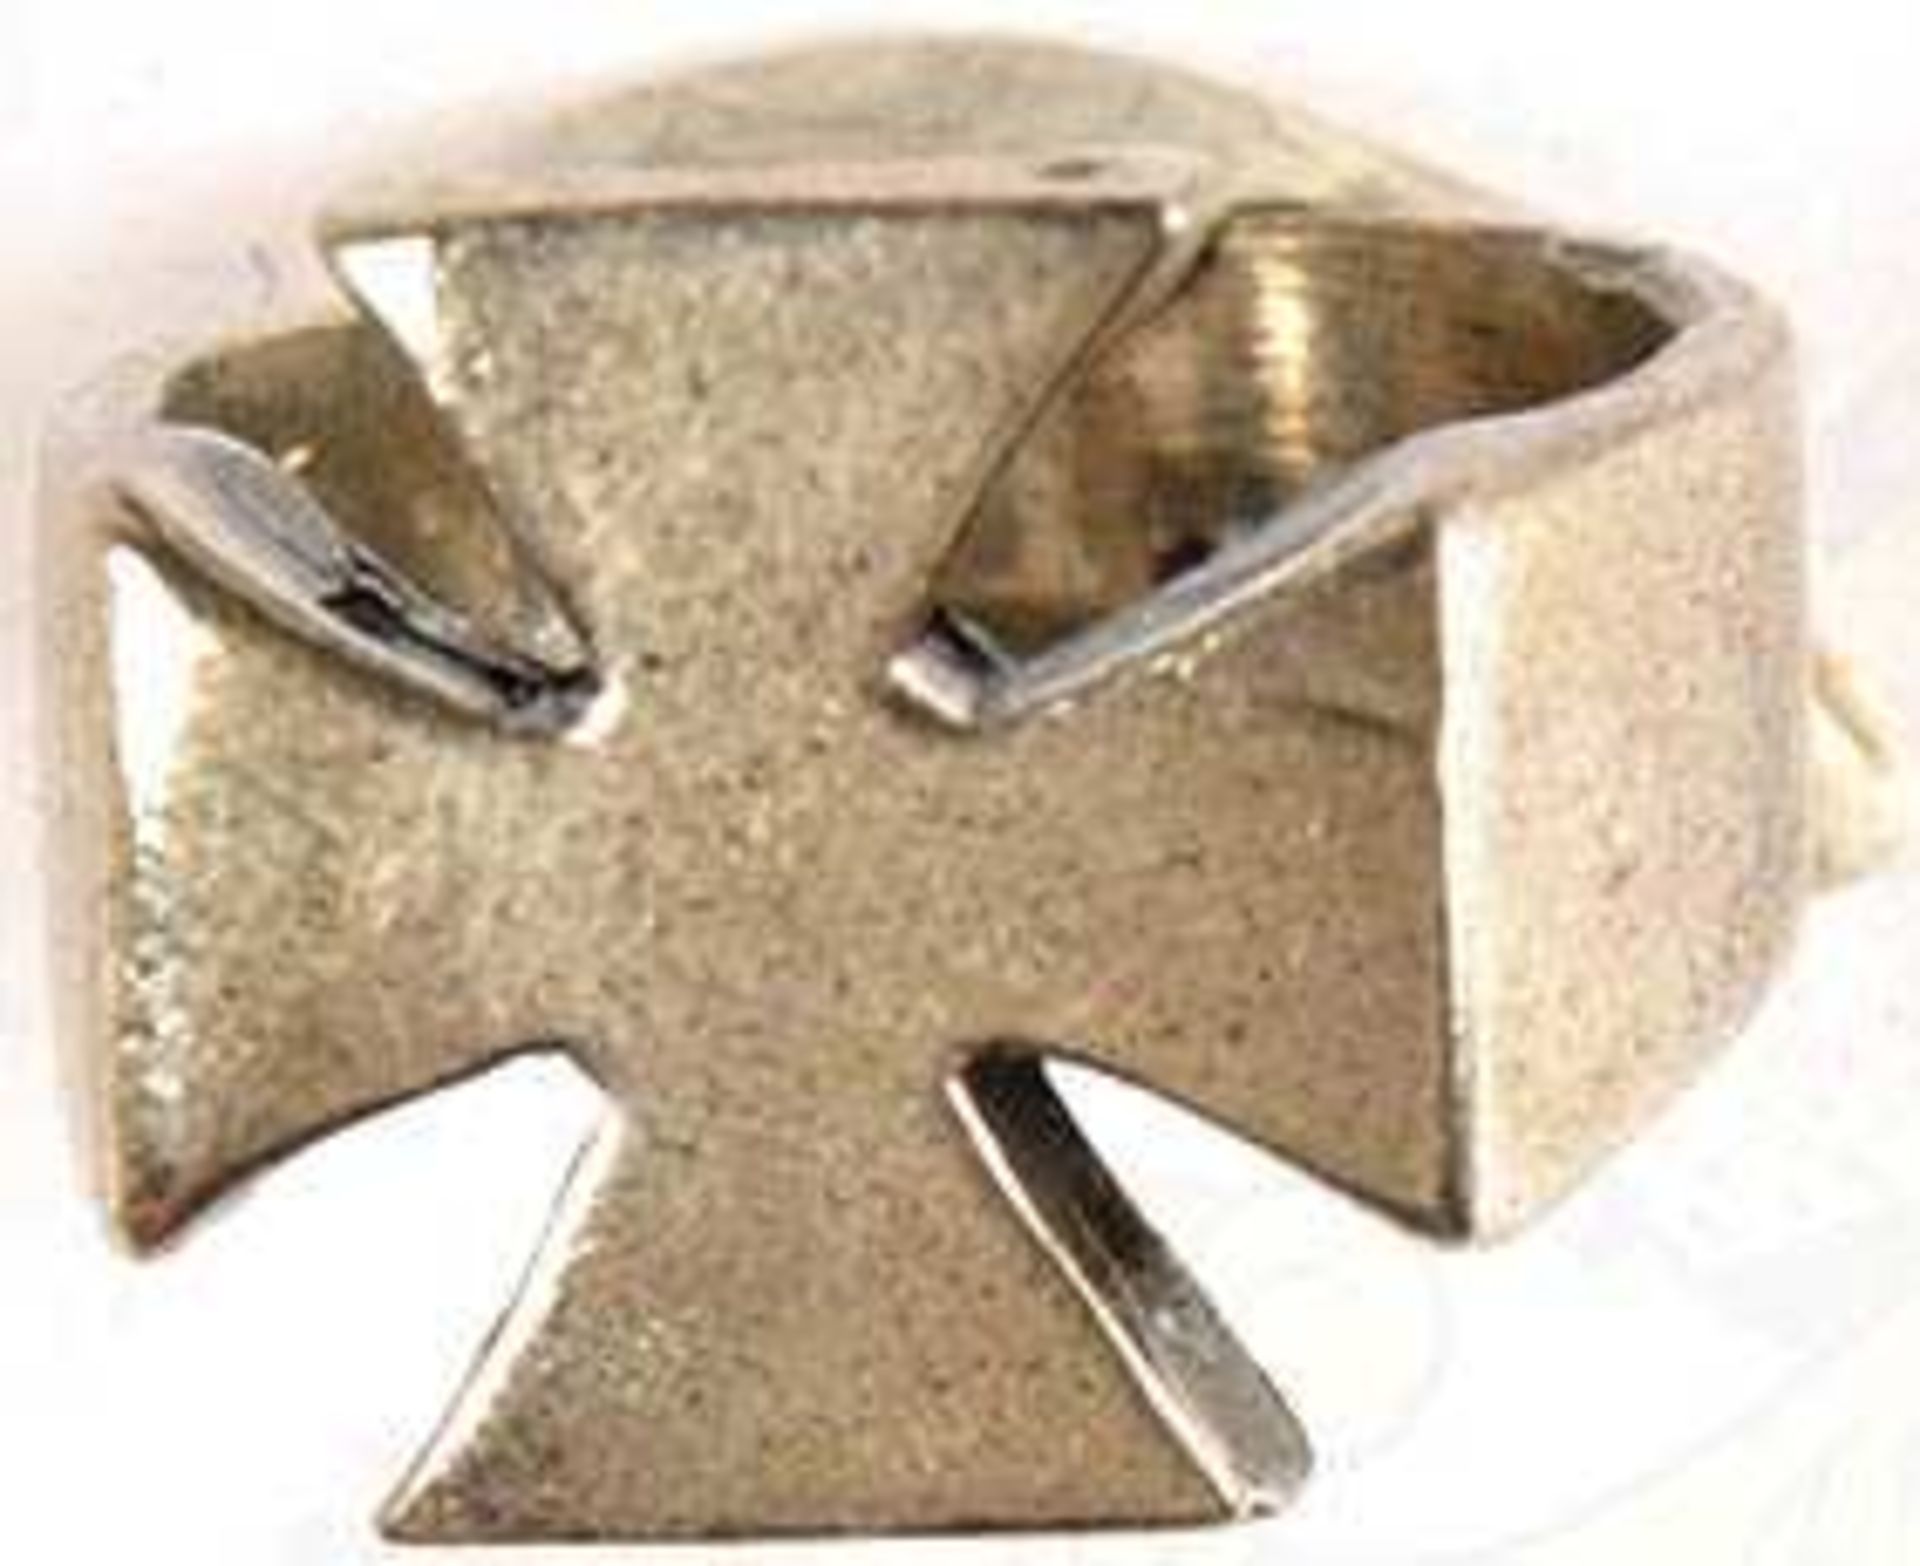 FINGERRING, Schauseite in Form eines "Eisernen Kreuzes" 18x18 mm, Silber "925", neuzeitl. <